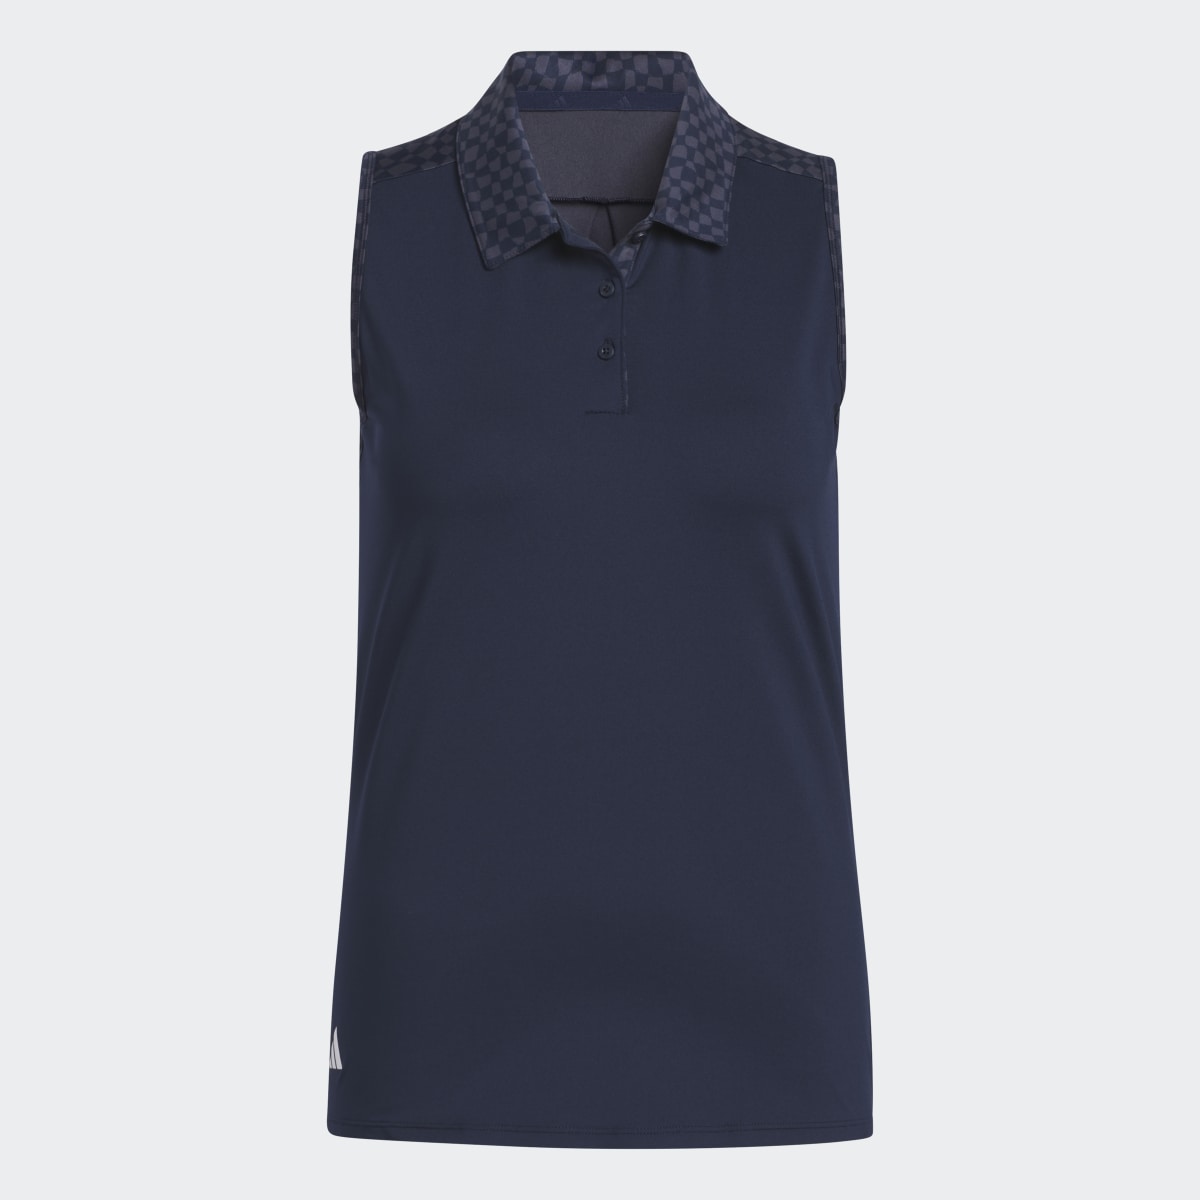 Adidas Ultimate365 Sleeveless Golf Polo Shirt. 5